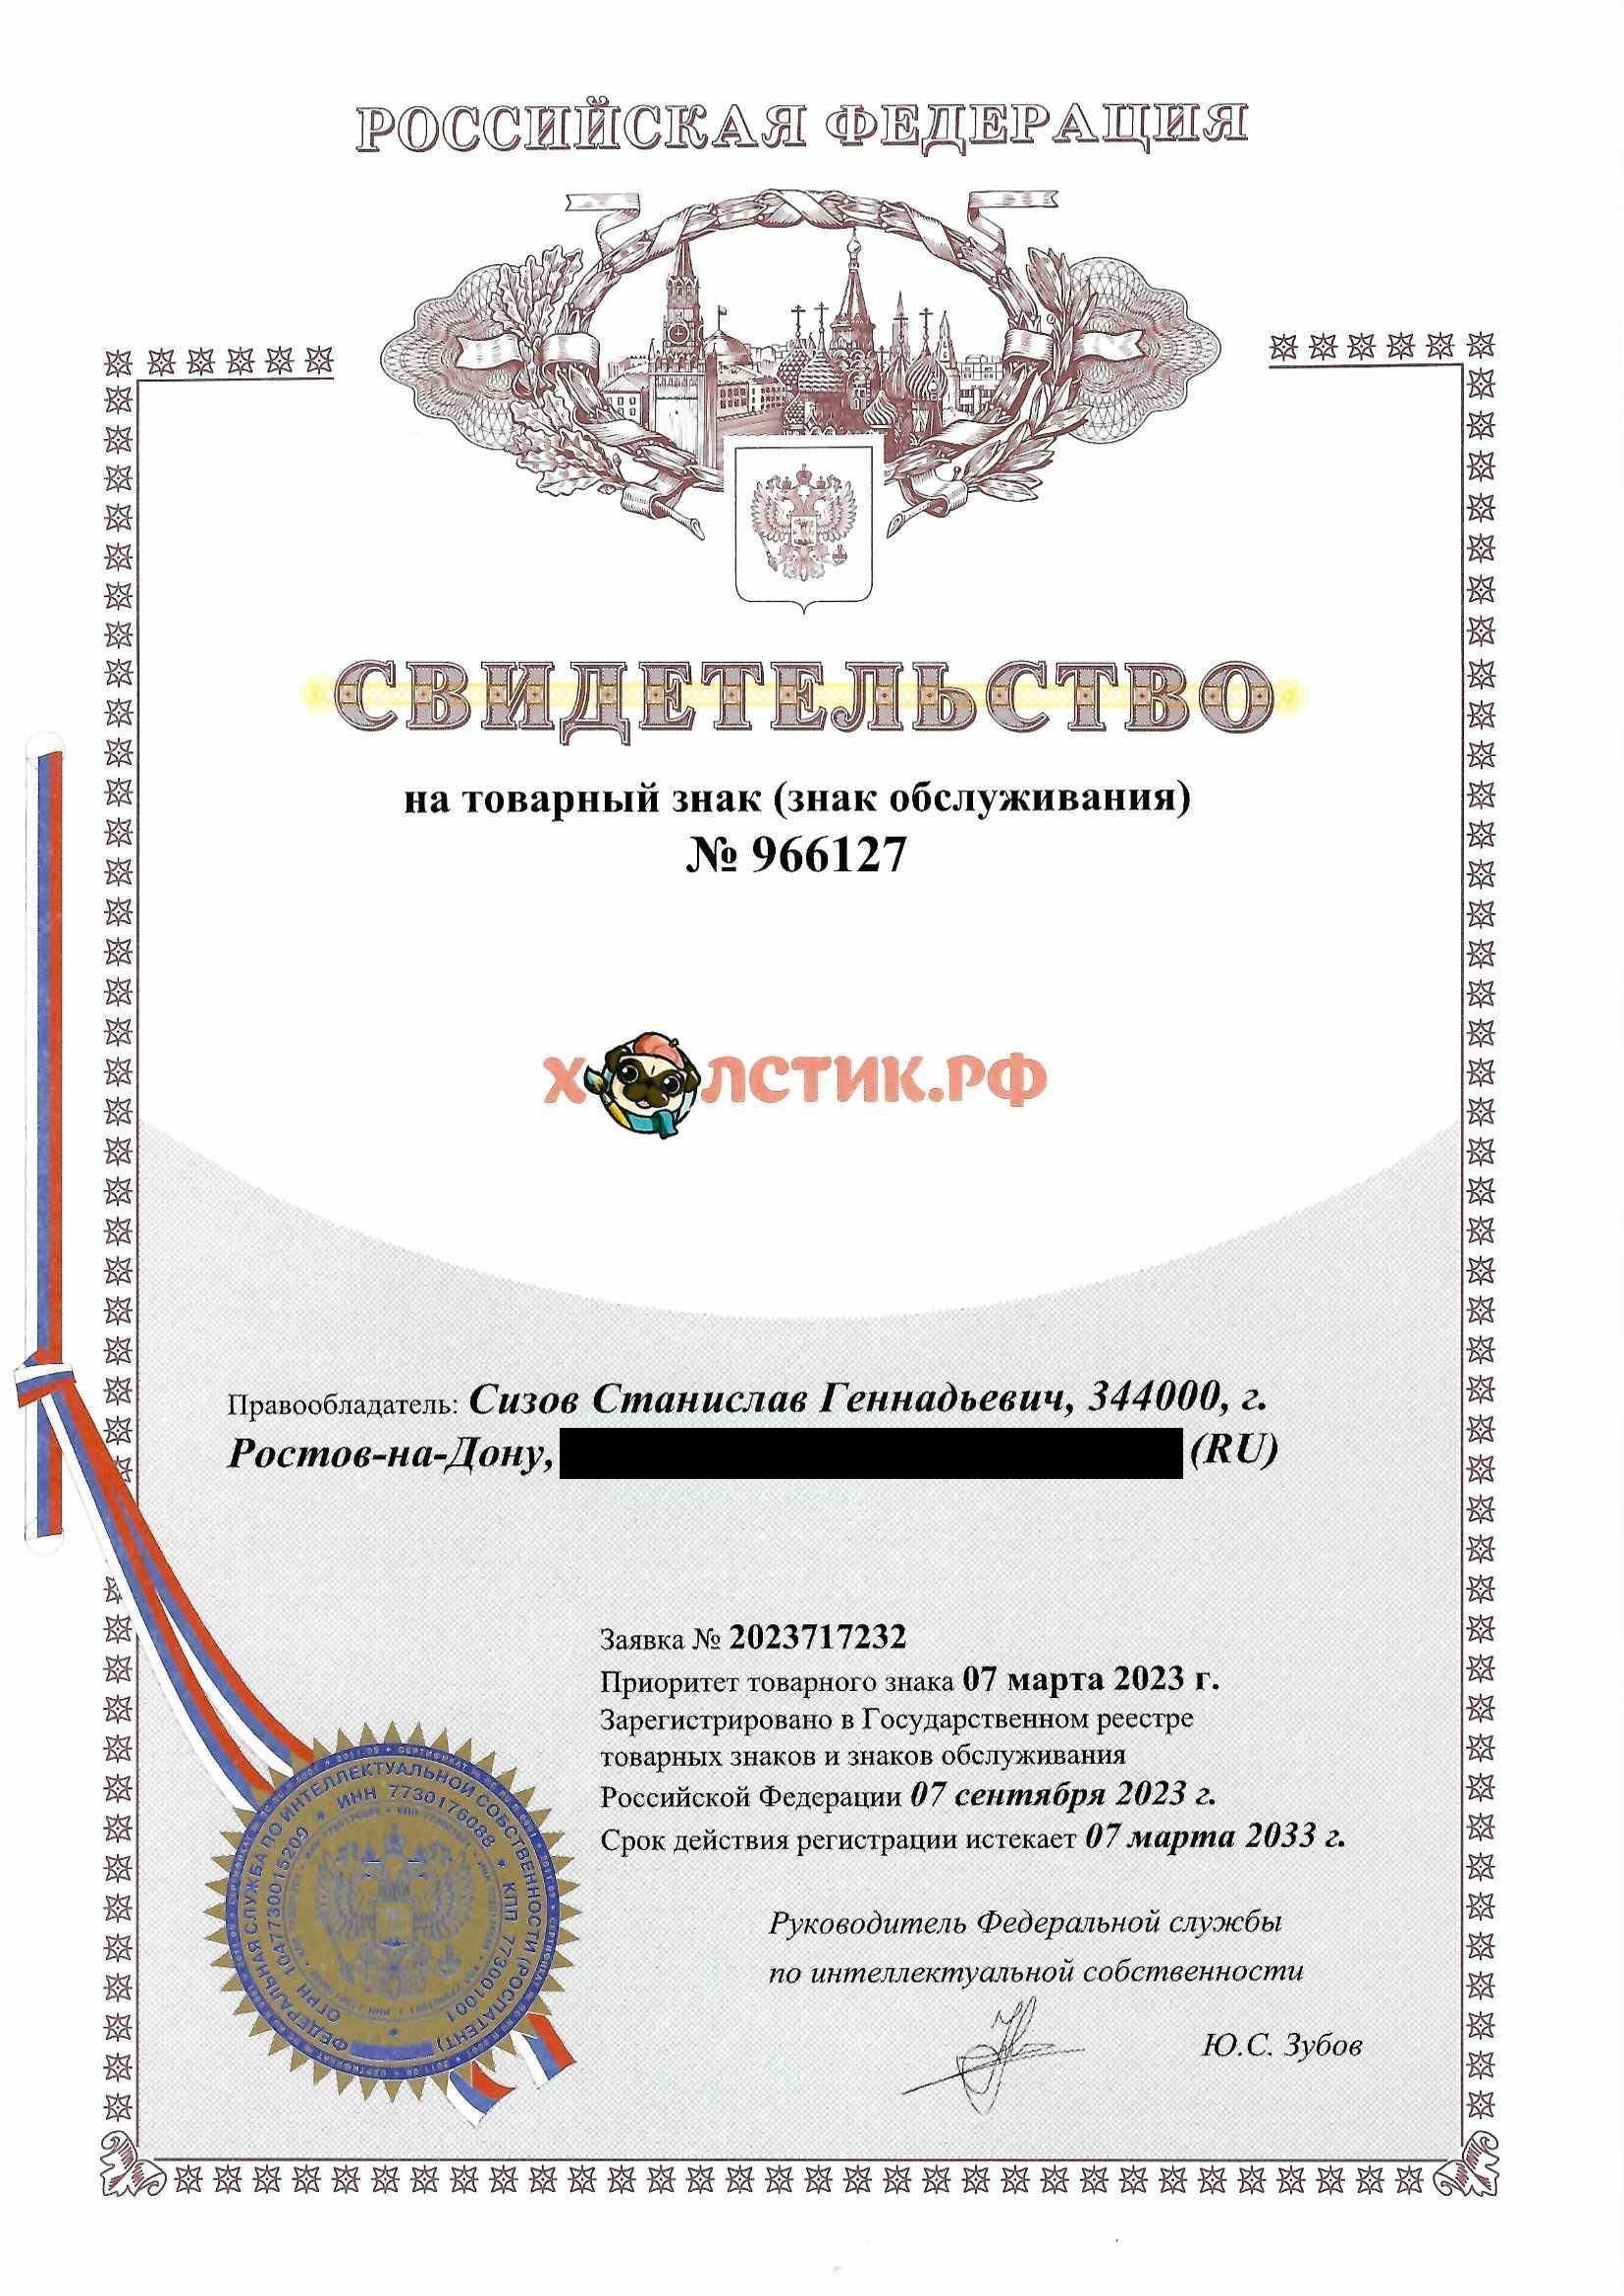 Товарный знак № 966127 – ХОЛСТИК.РФ